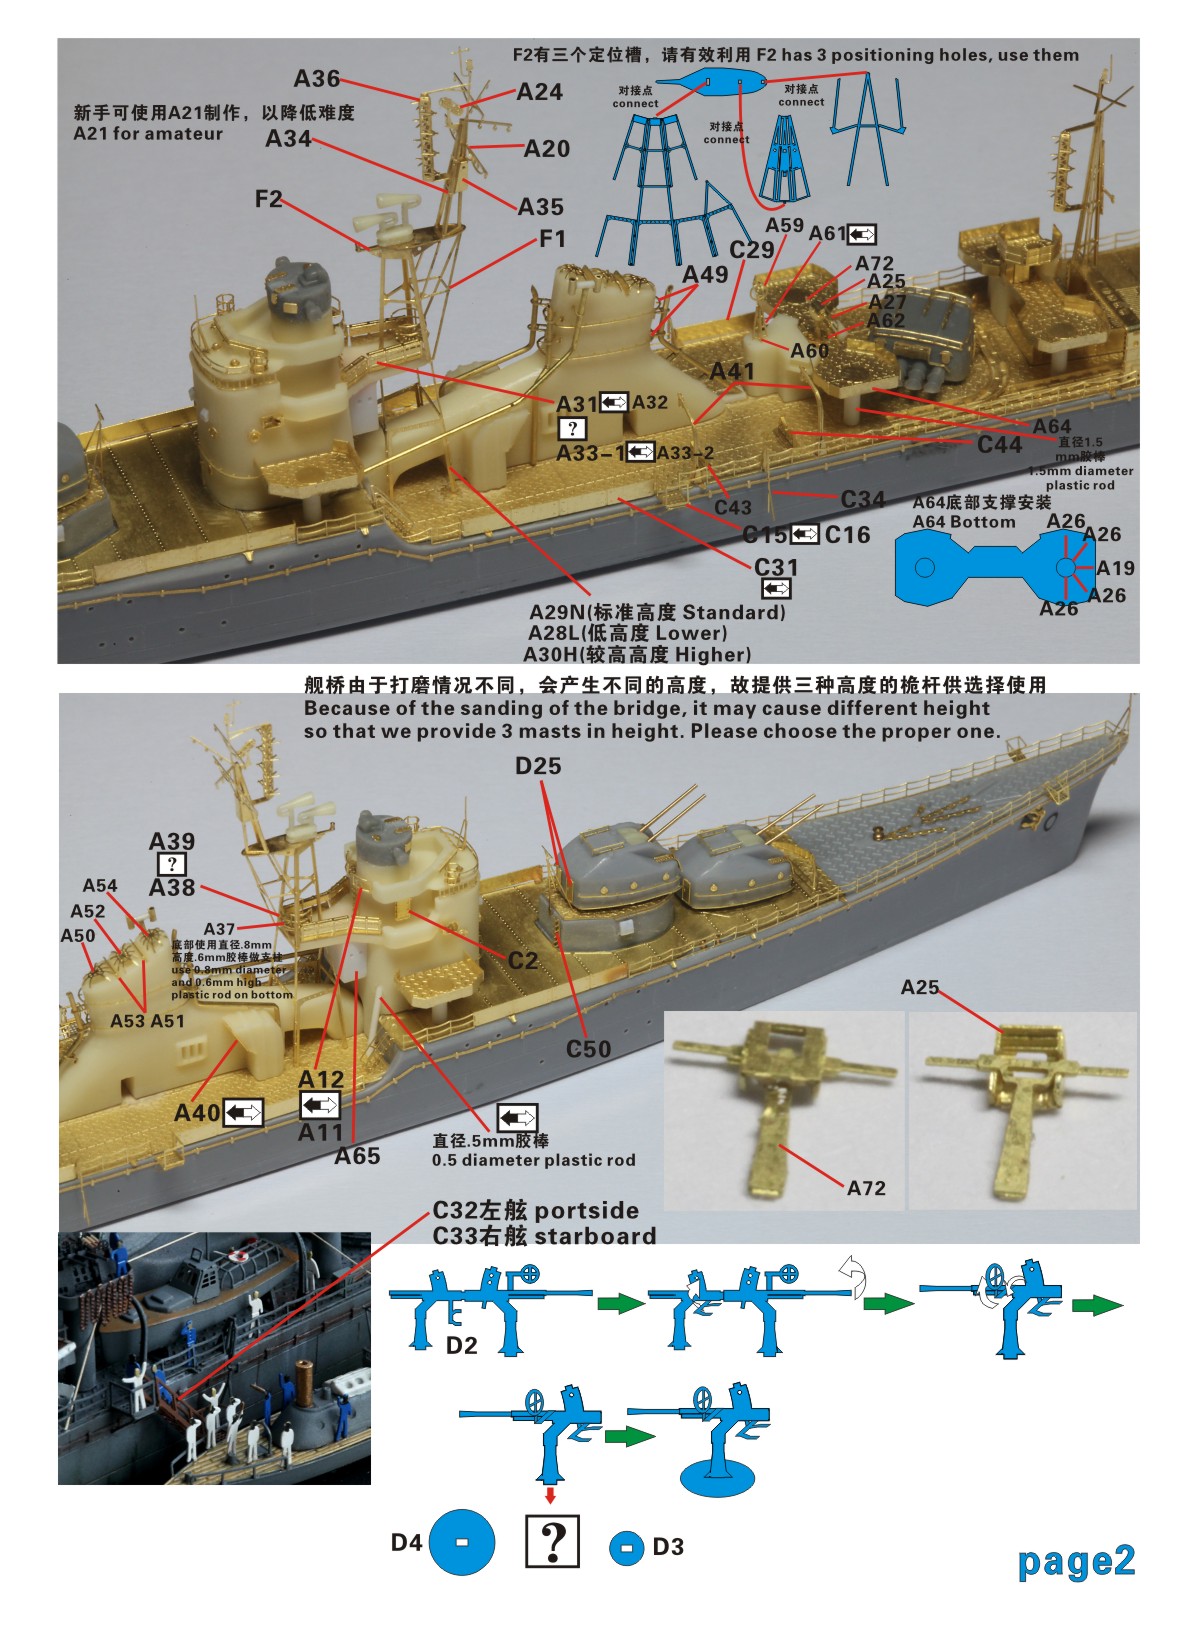 1/700 二战日本海军冬月号驱逐舰升级改造套件(配青岛社) - 点击图像关闭